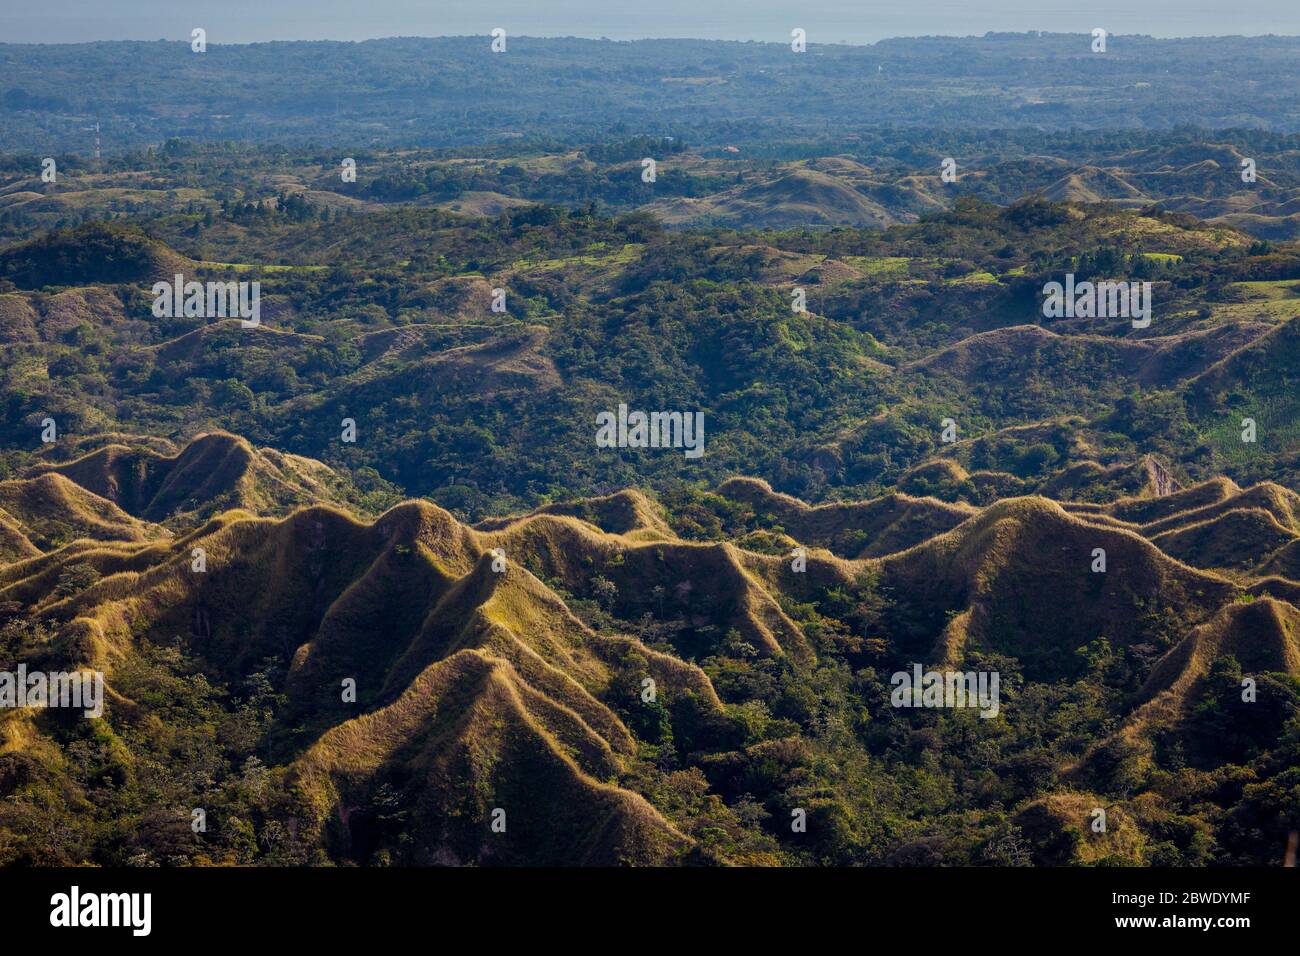 Schöne Gebirgsformationen von einem Aussichtspunkt in der Nähe von La Laguna, Pacific Slope, Panama Provinz, Republik Panama gesehen. Stockfoto